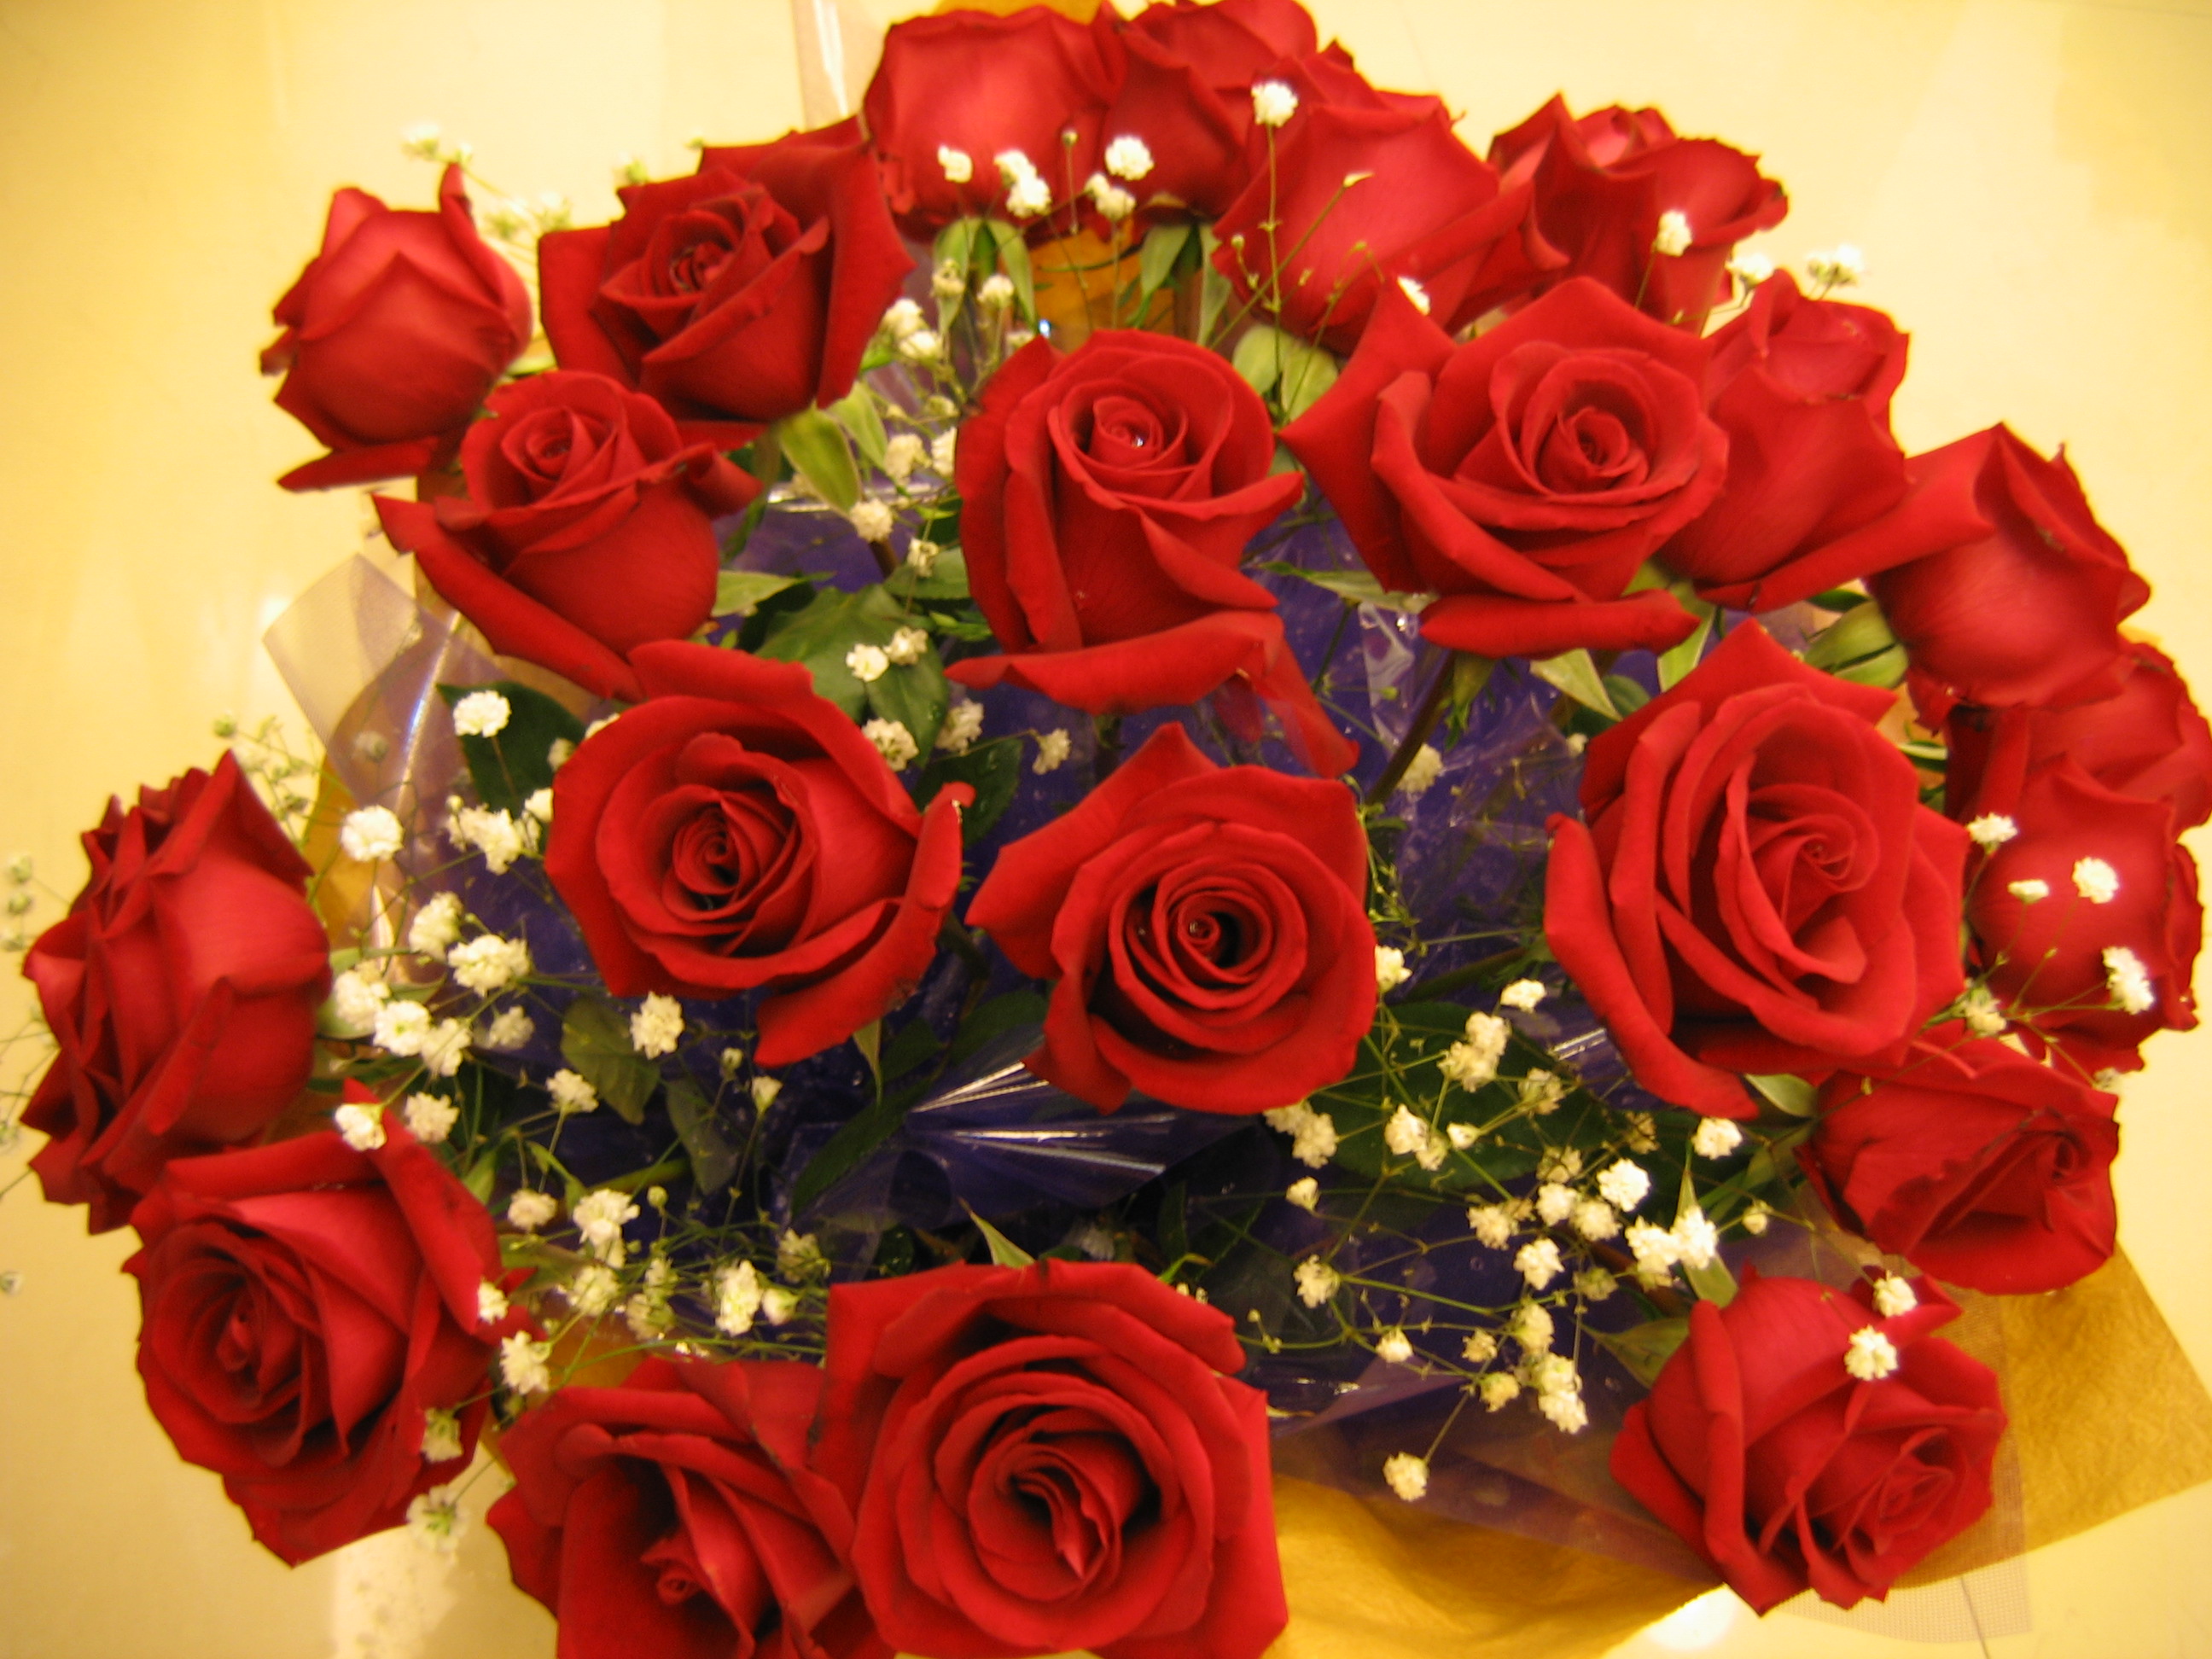 活了25载了,第一次给mm送这么大束的花——2006年情人节!